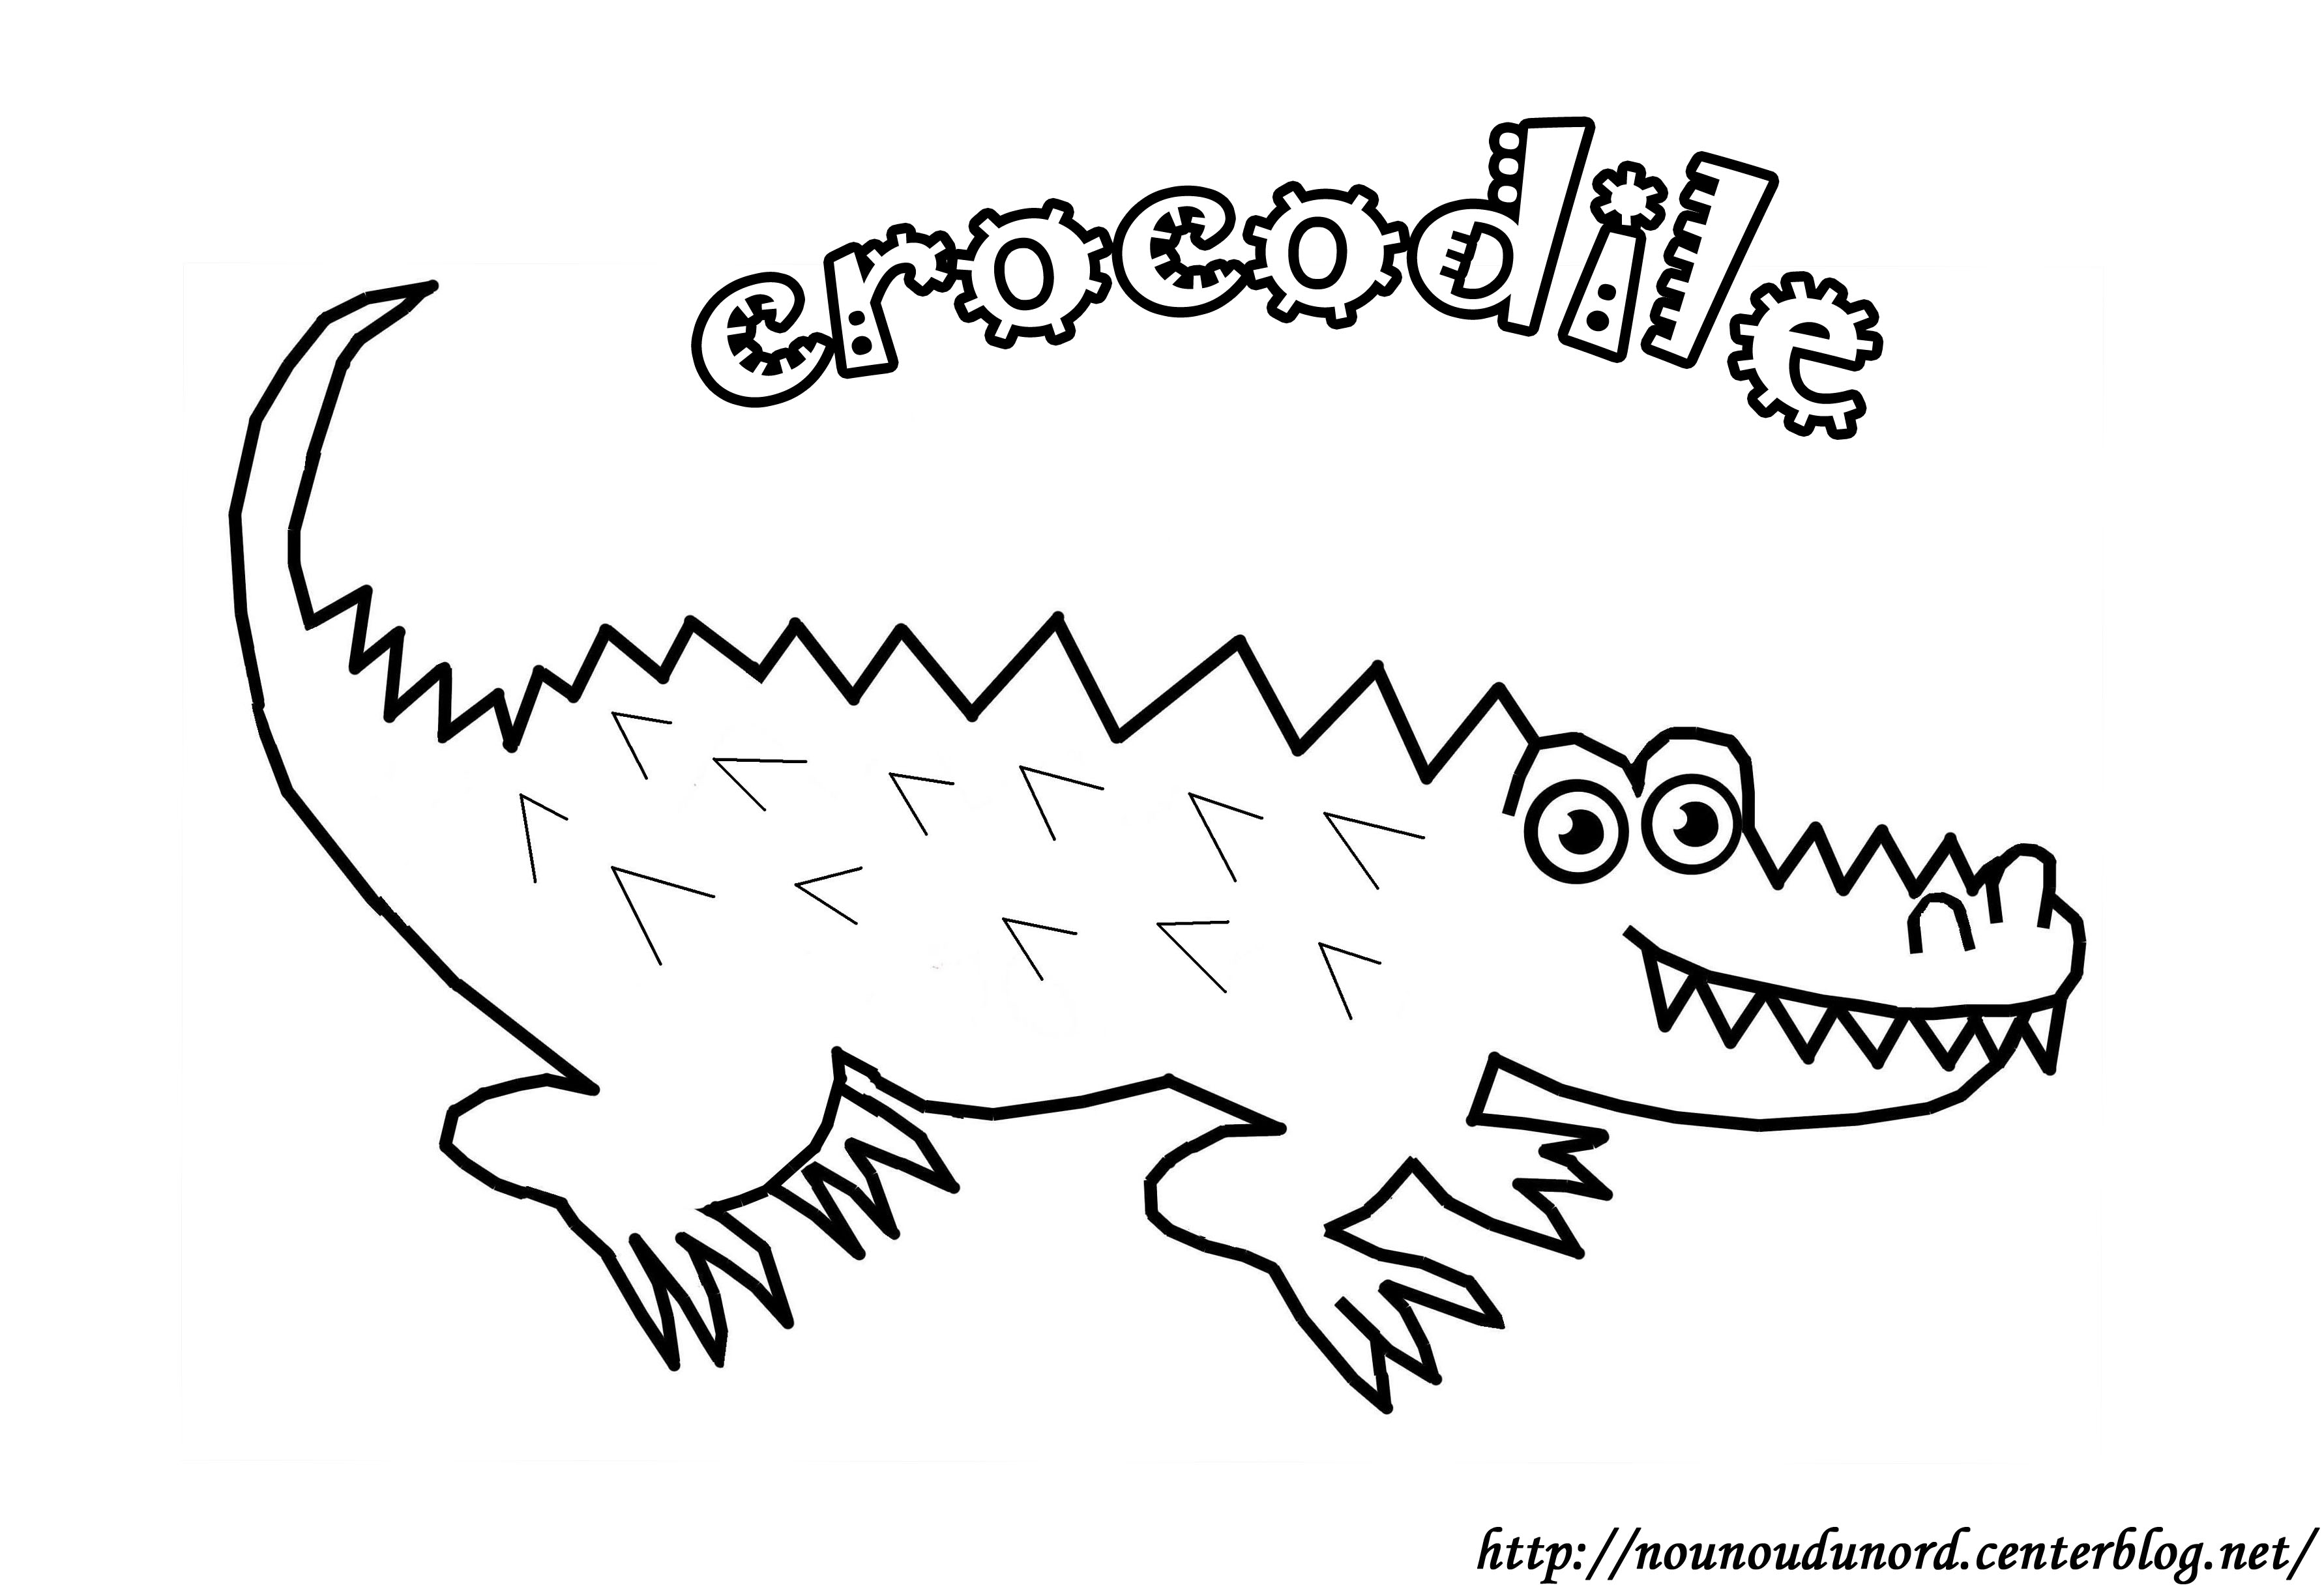 coloriage crocodile